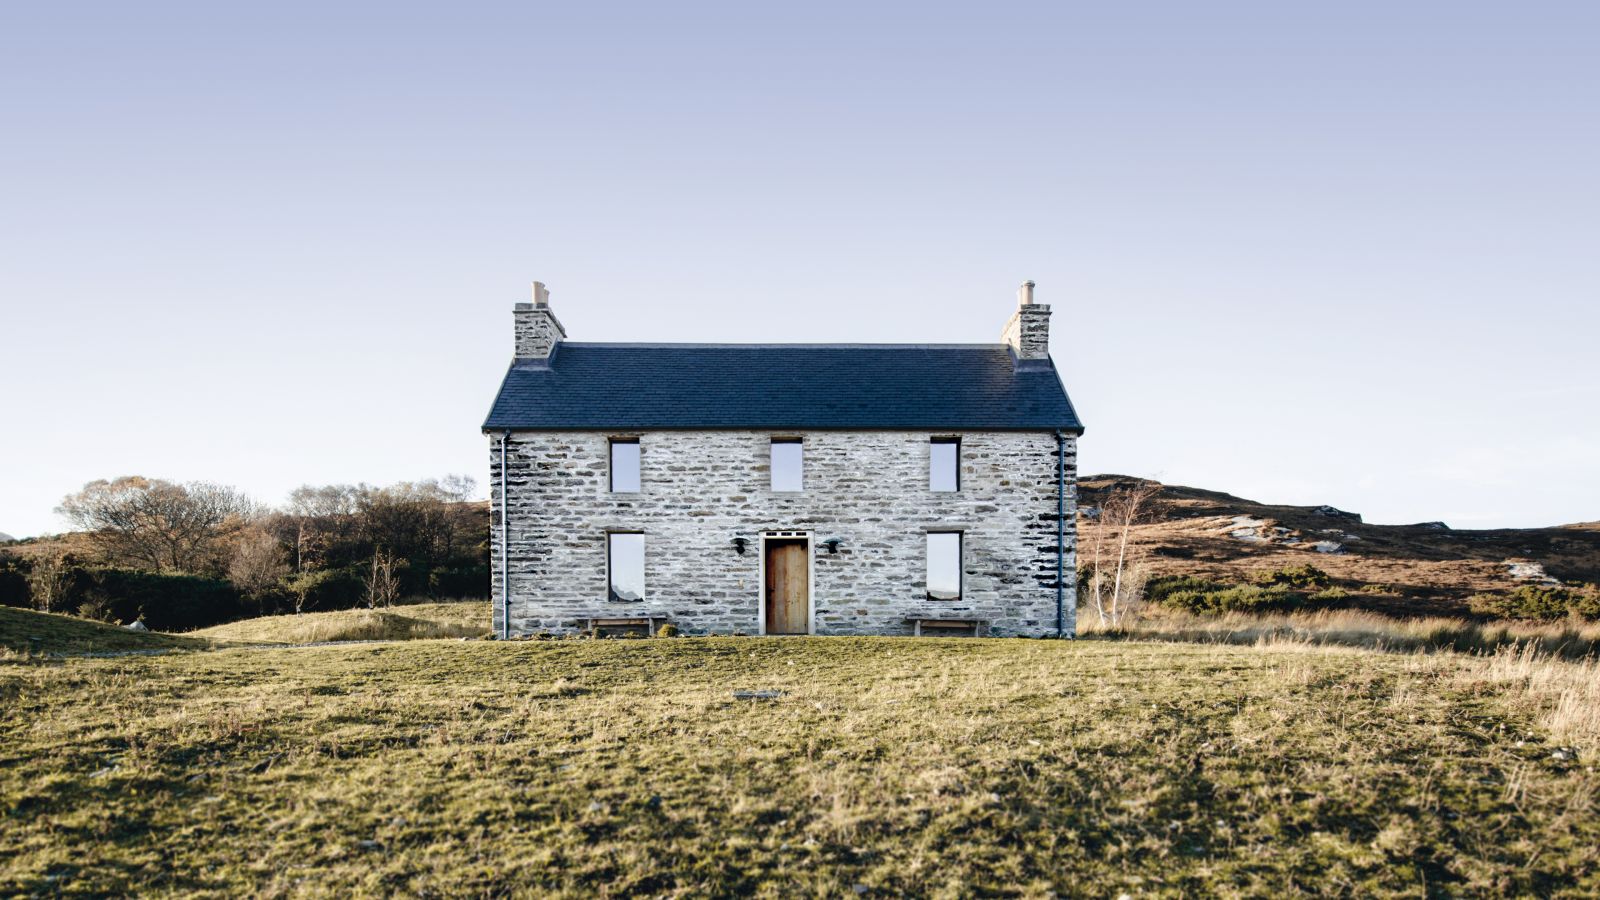 Farblich fügt sich das Cottage innen wie aussen in die romantische schottische Landschaft. Der Stein für die Mauern wird in der Gegend abgebaut.